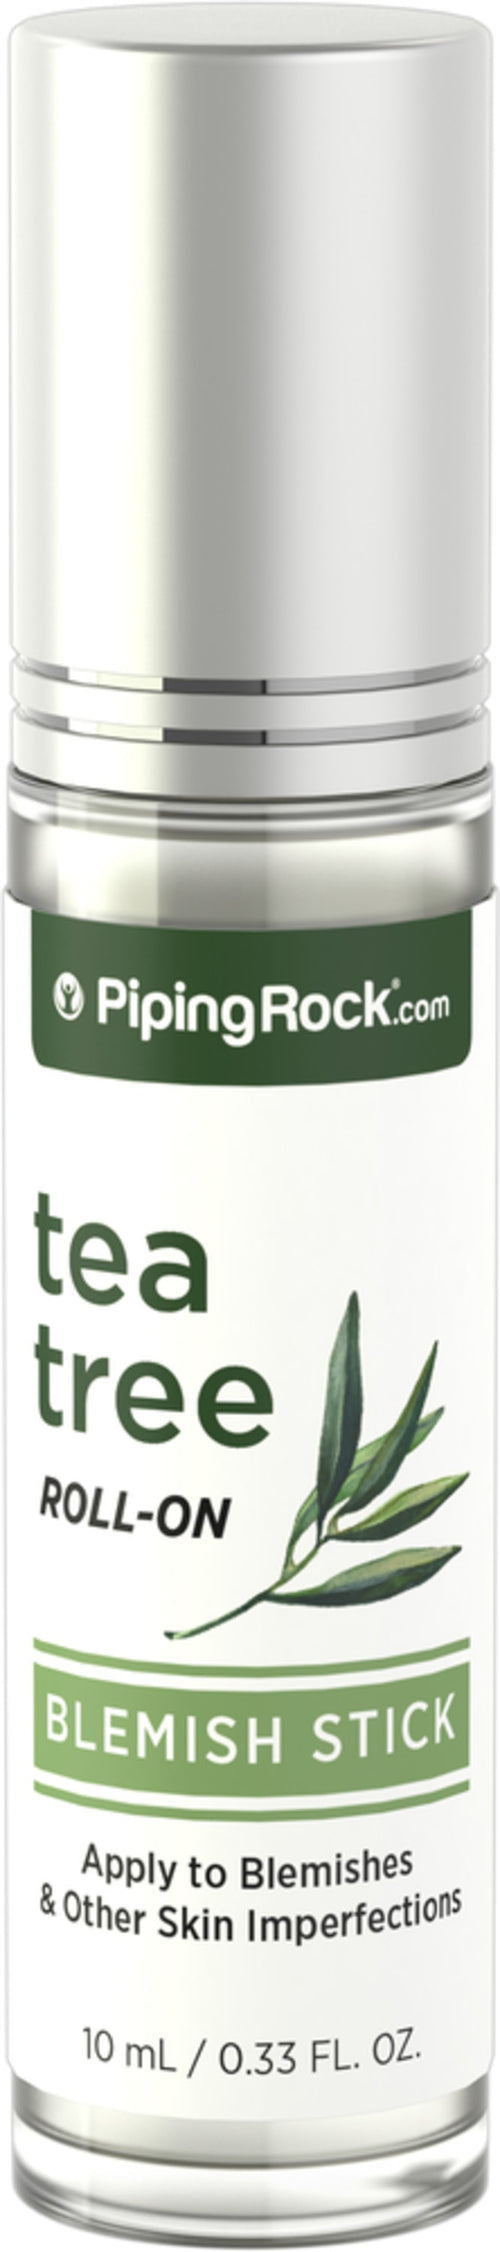 Correttore all'olio di tea tree  0.33 fl oz 10 mL Roll-On    